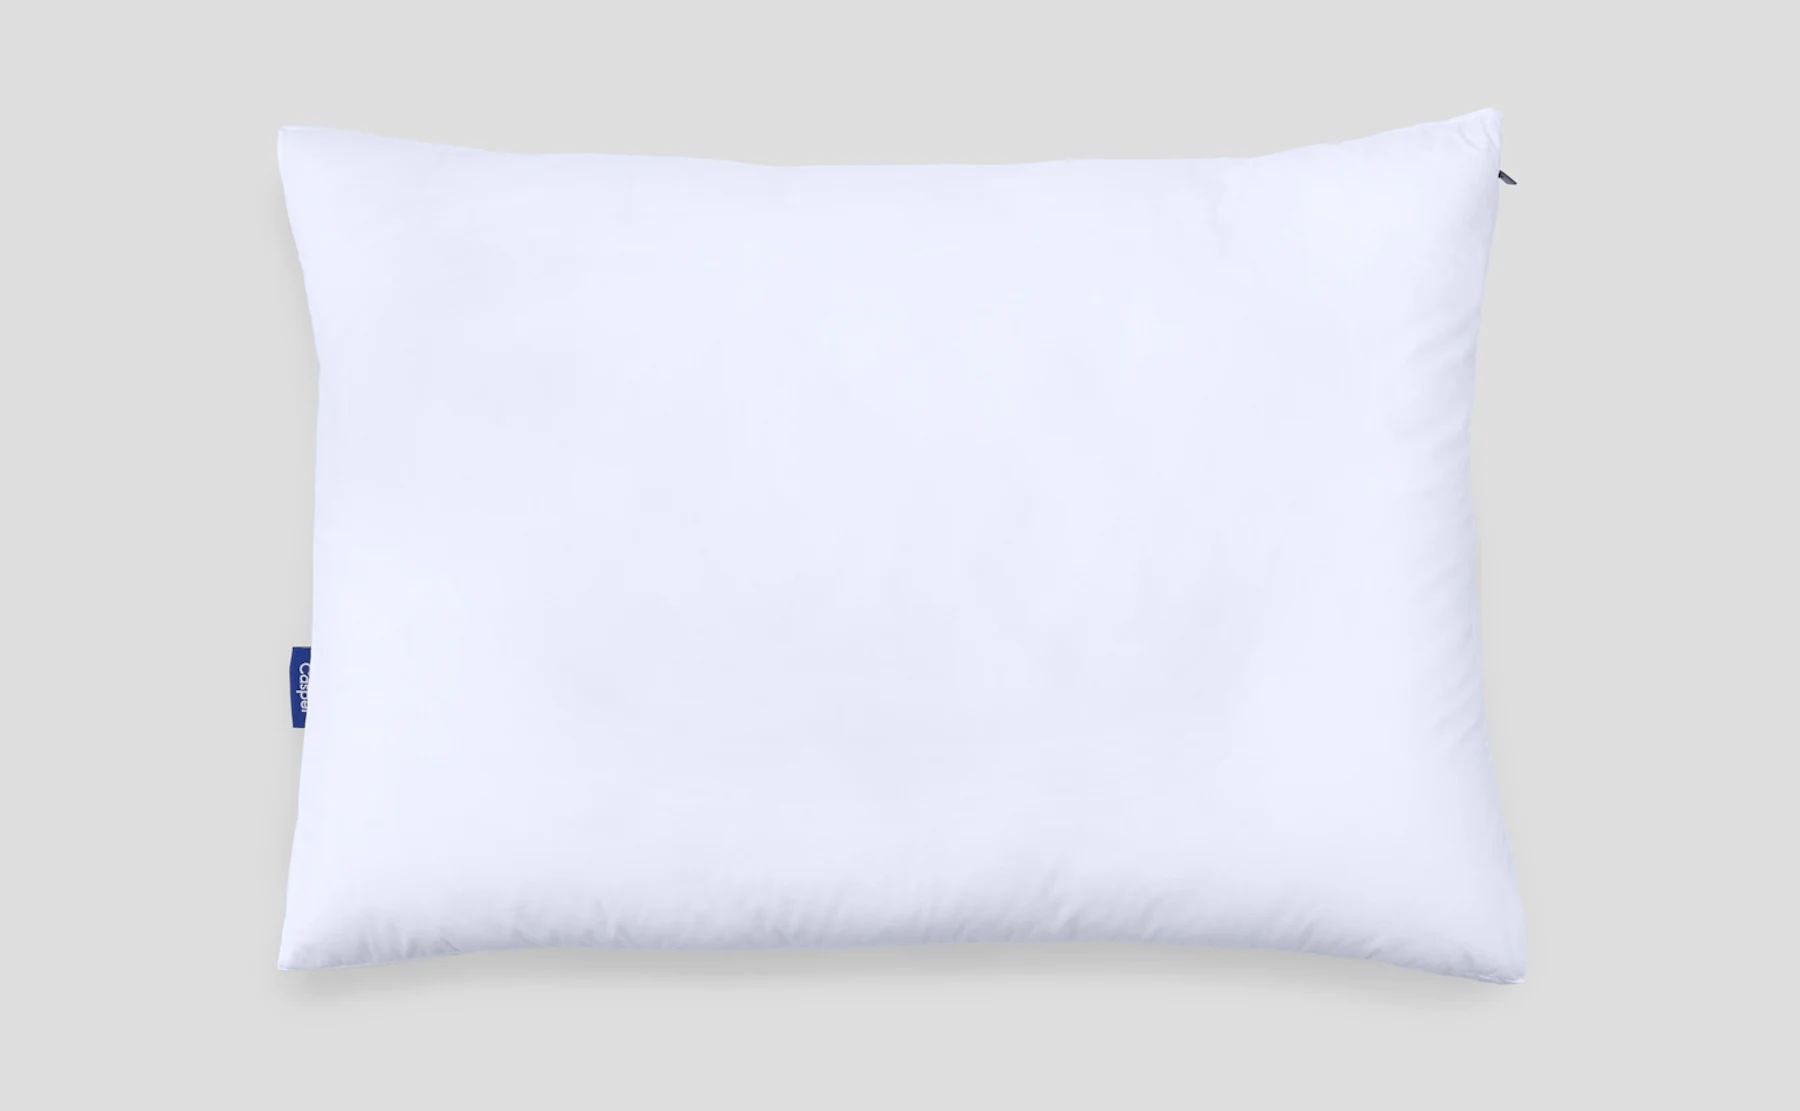 Original Casper Pillow | Casper Sleep Inc